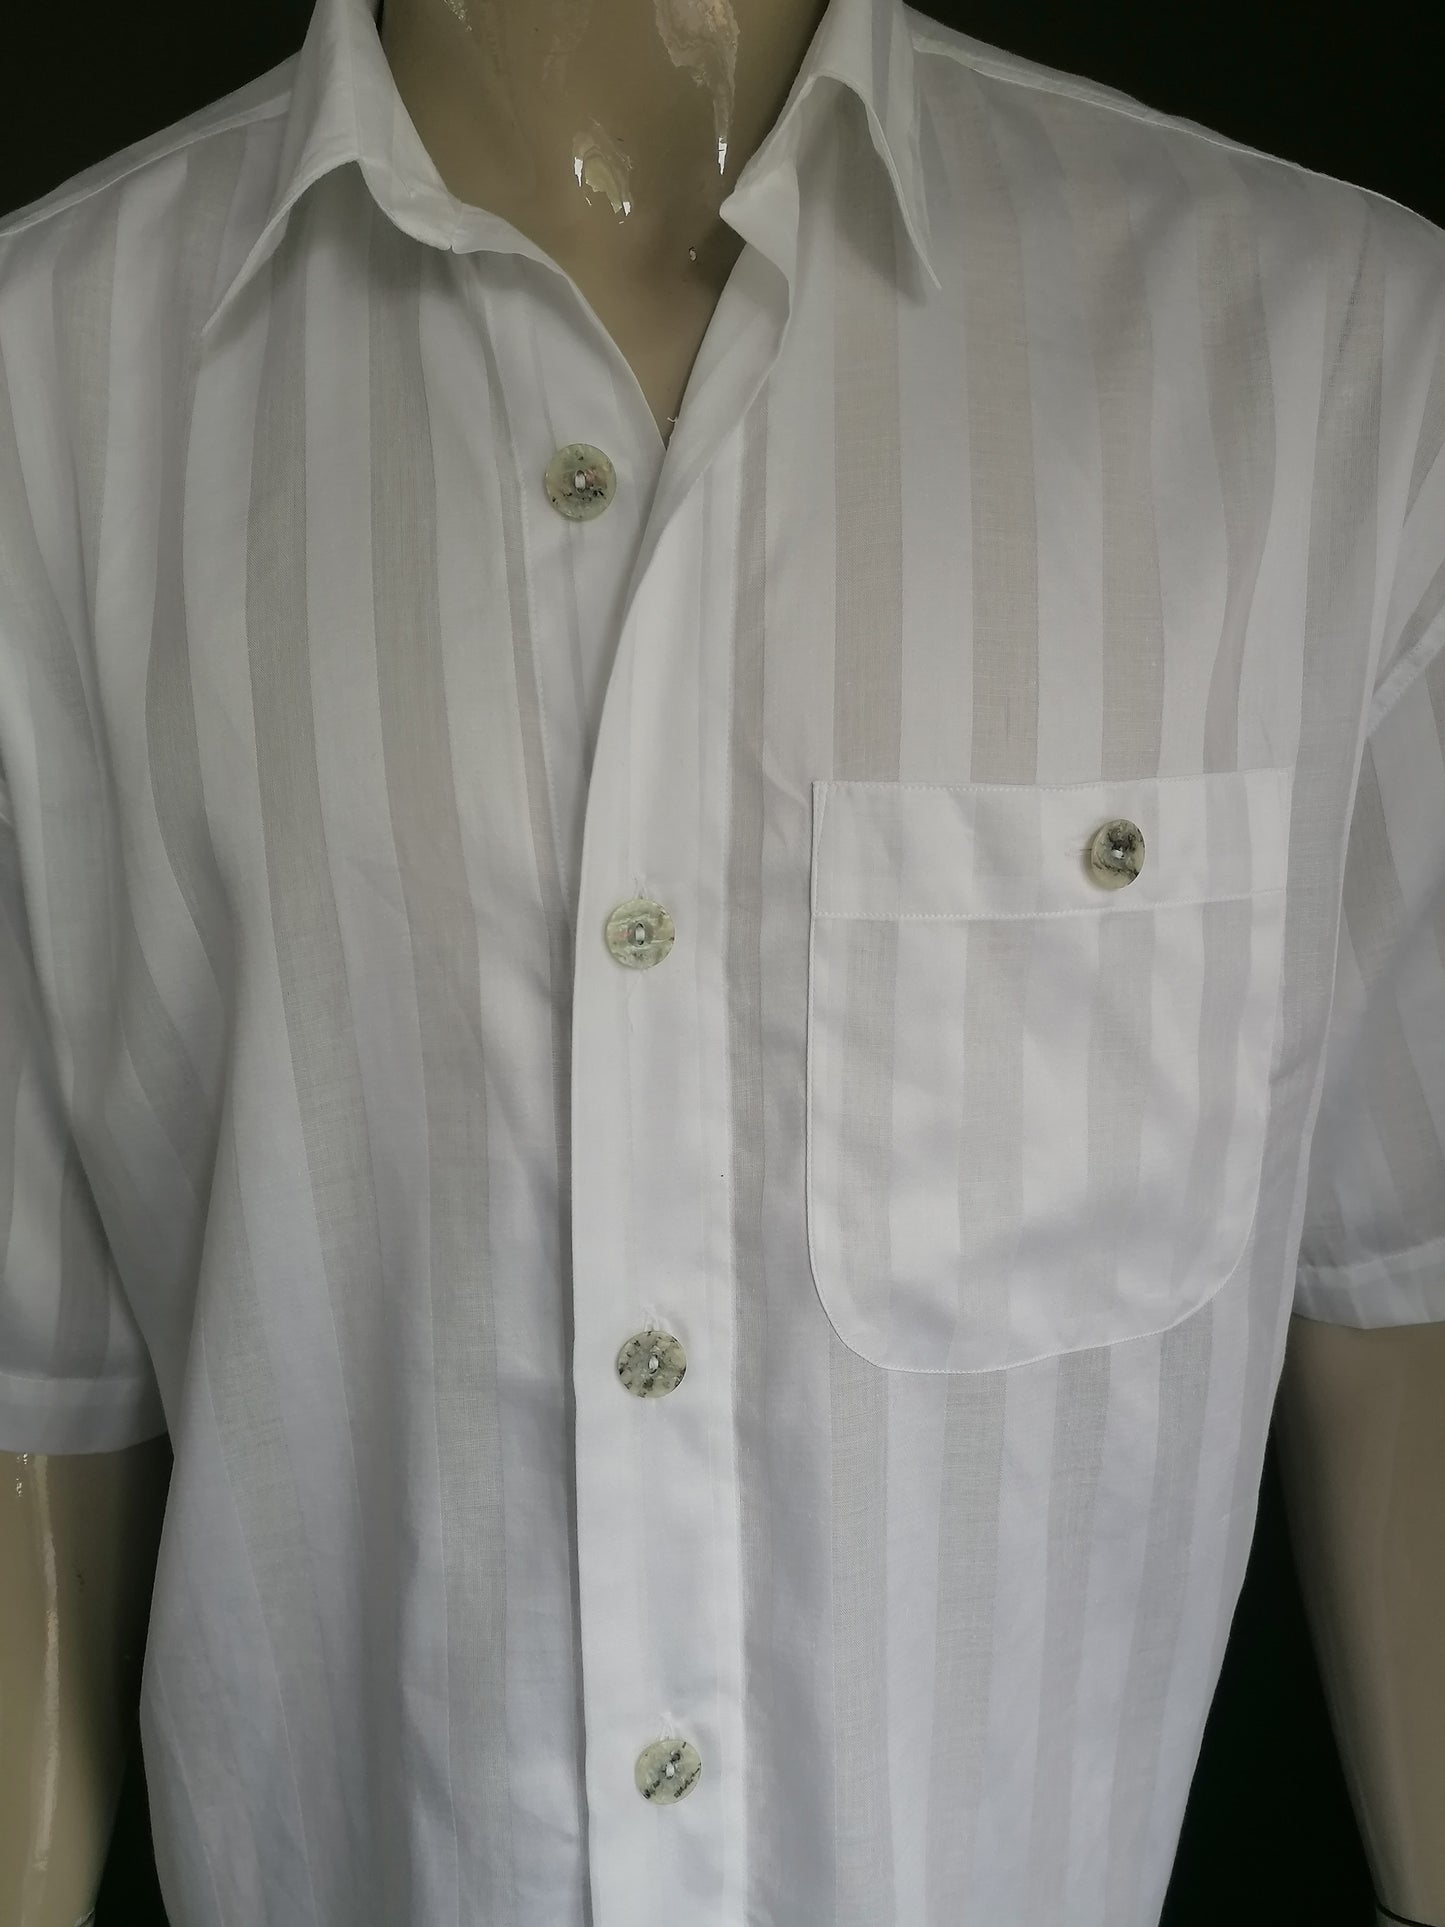 Camisa de signum vintage manga corta y botones más grandes. Motivo de rayas blancas. Tamaño xl.